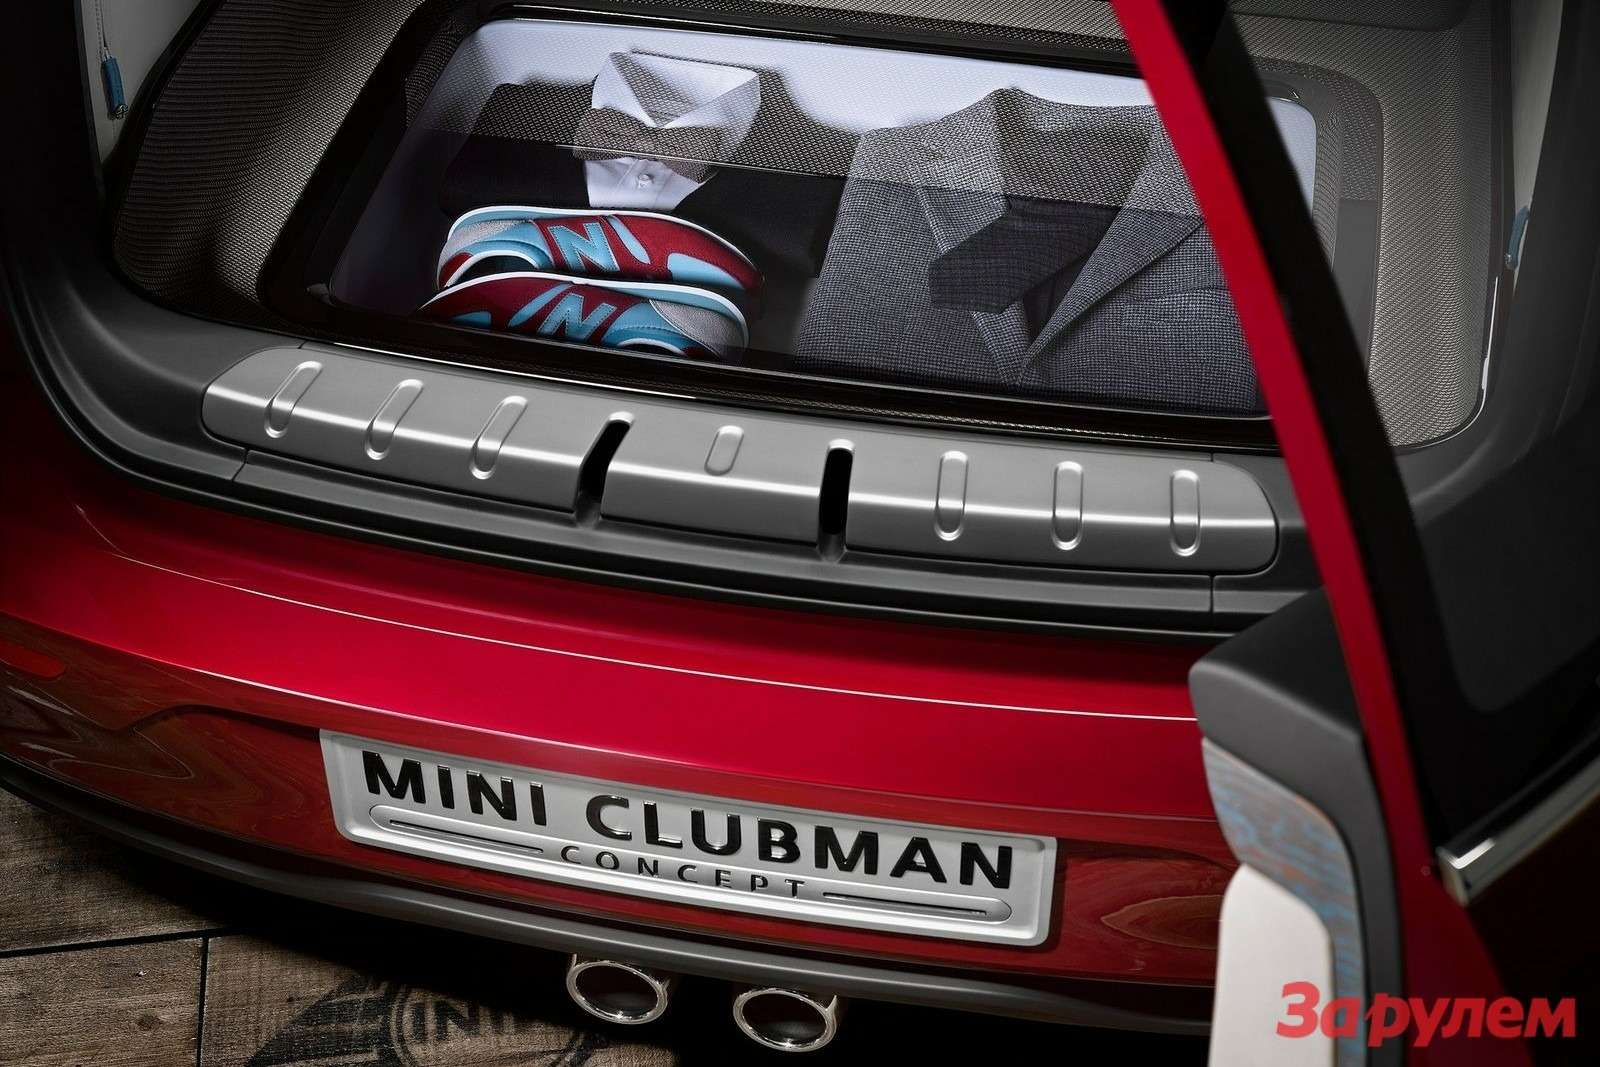 MINI Clubman Concept